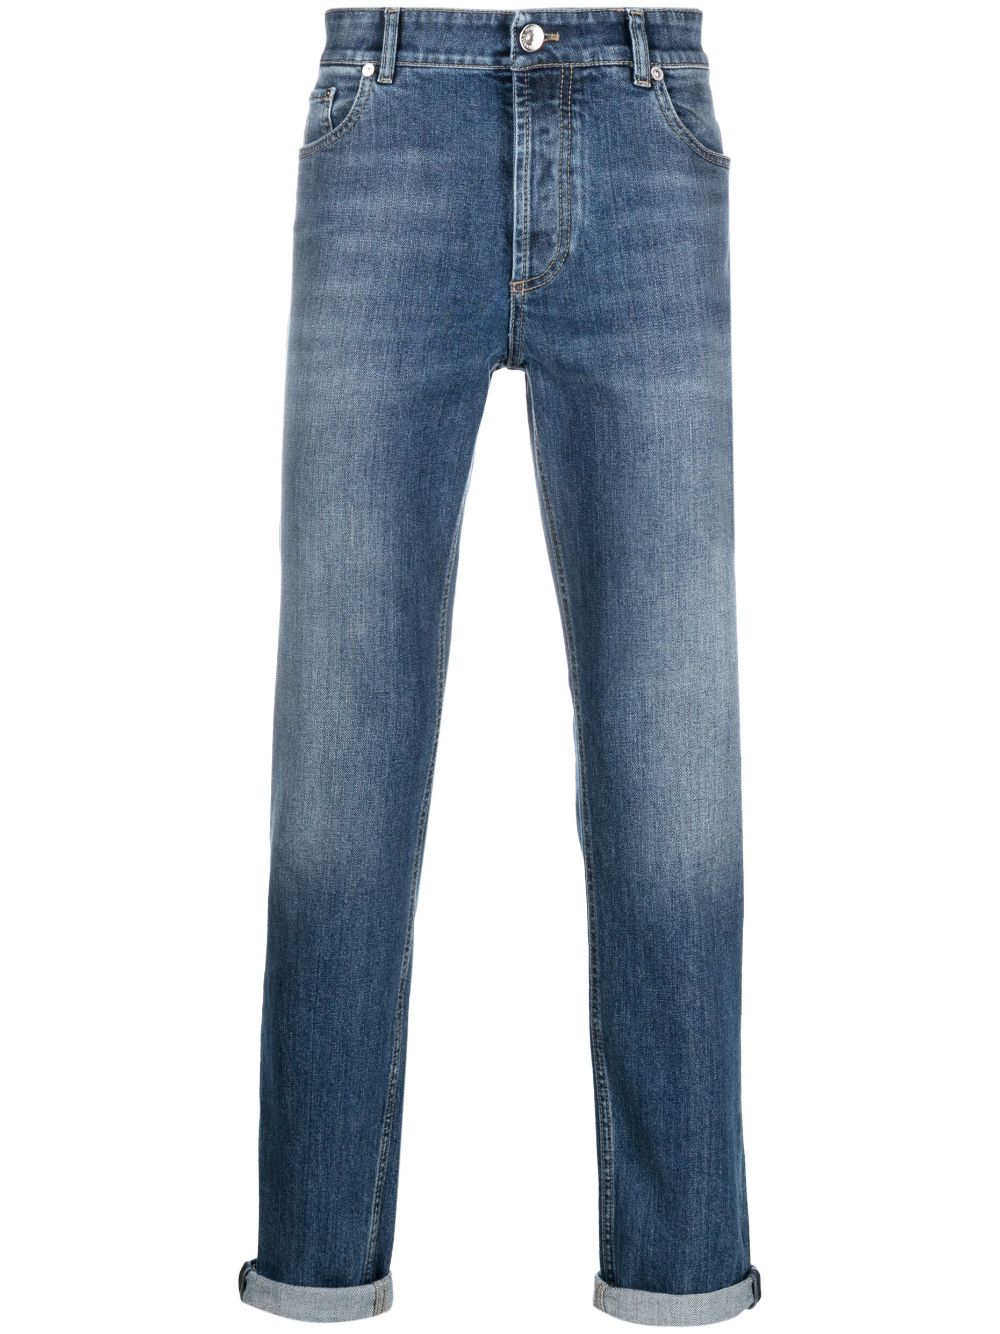 mid-rise cotton jeans